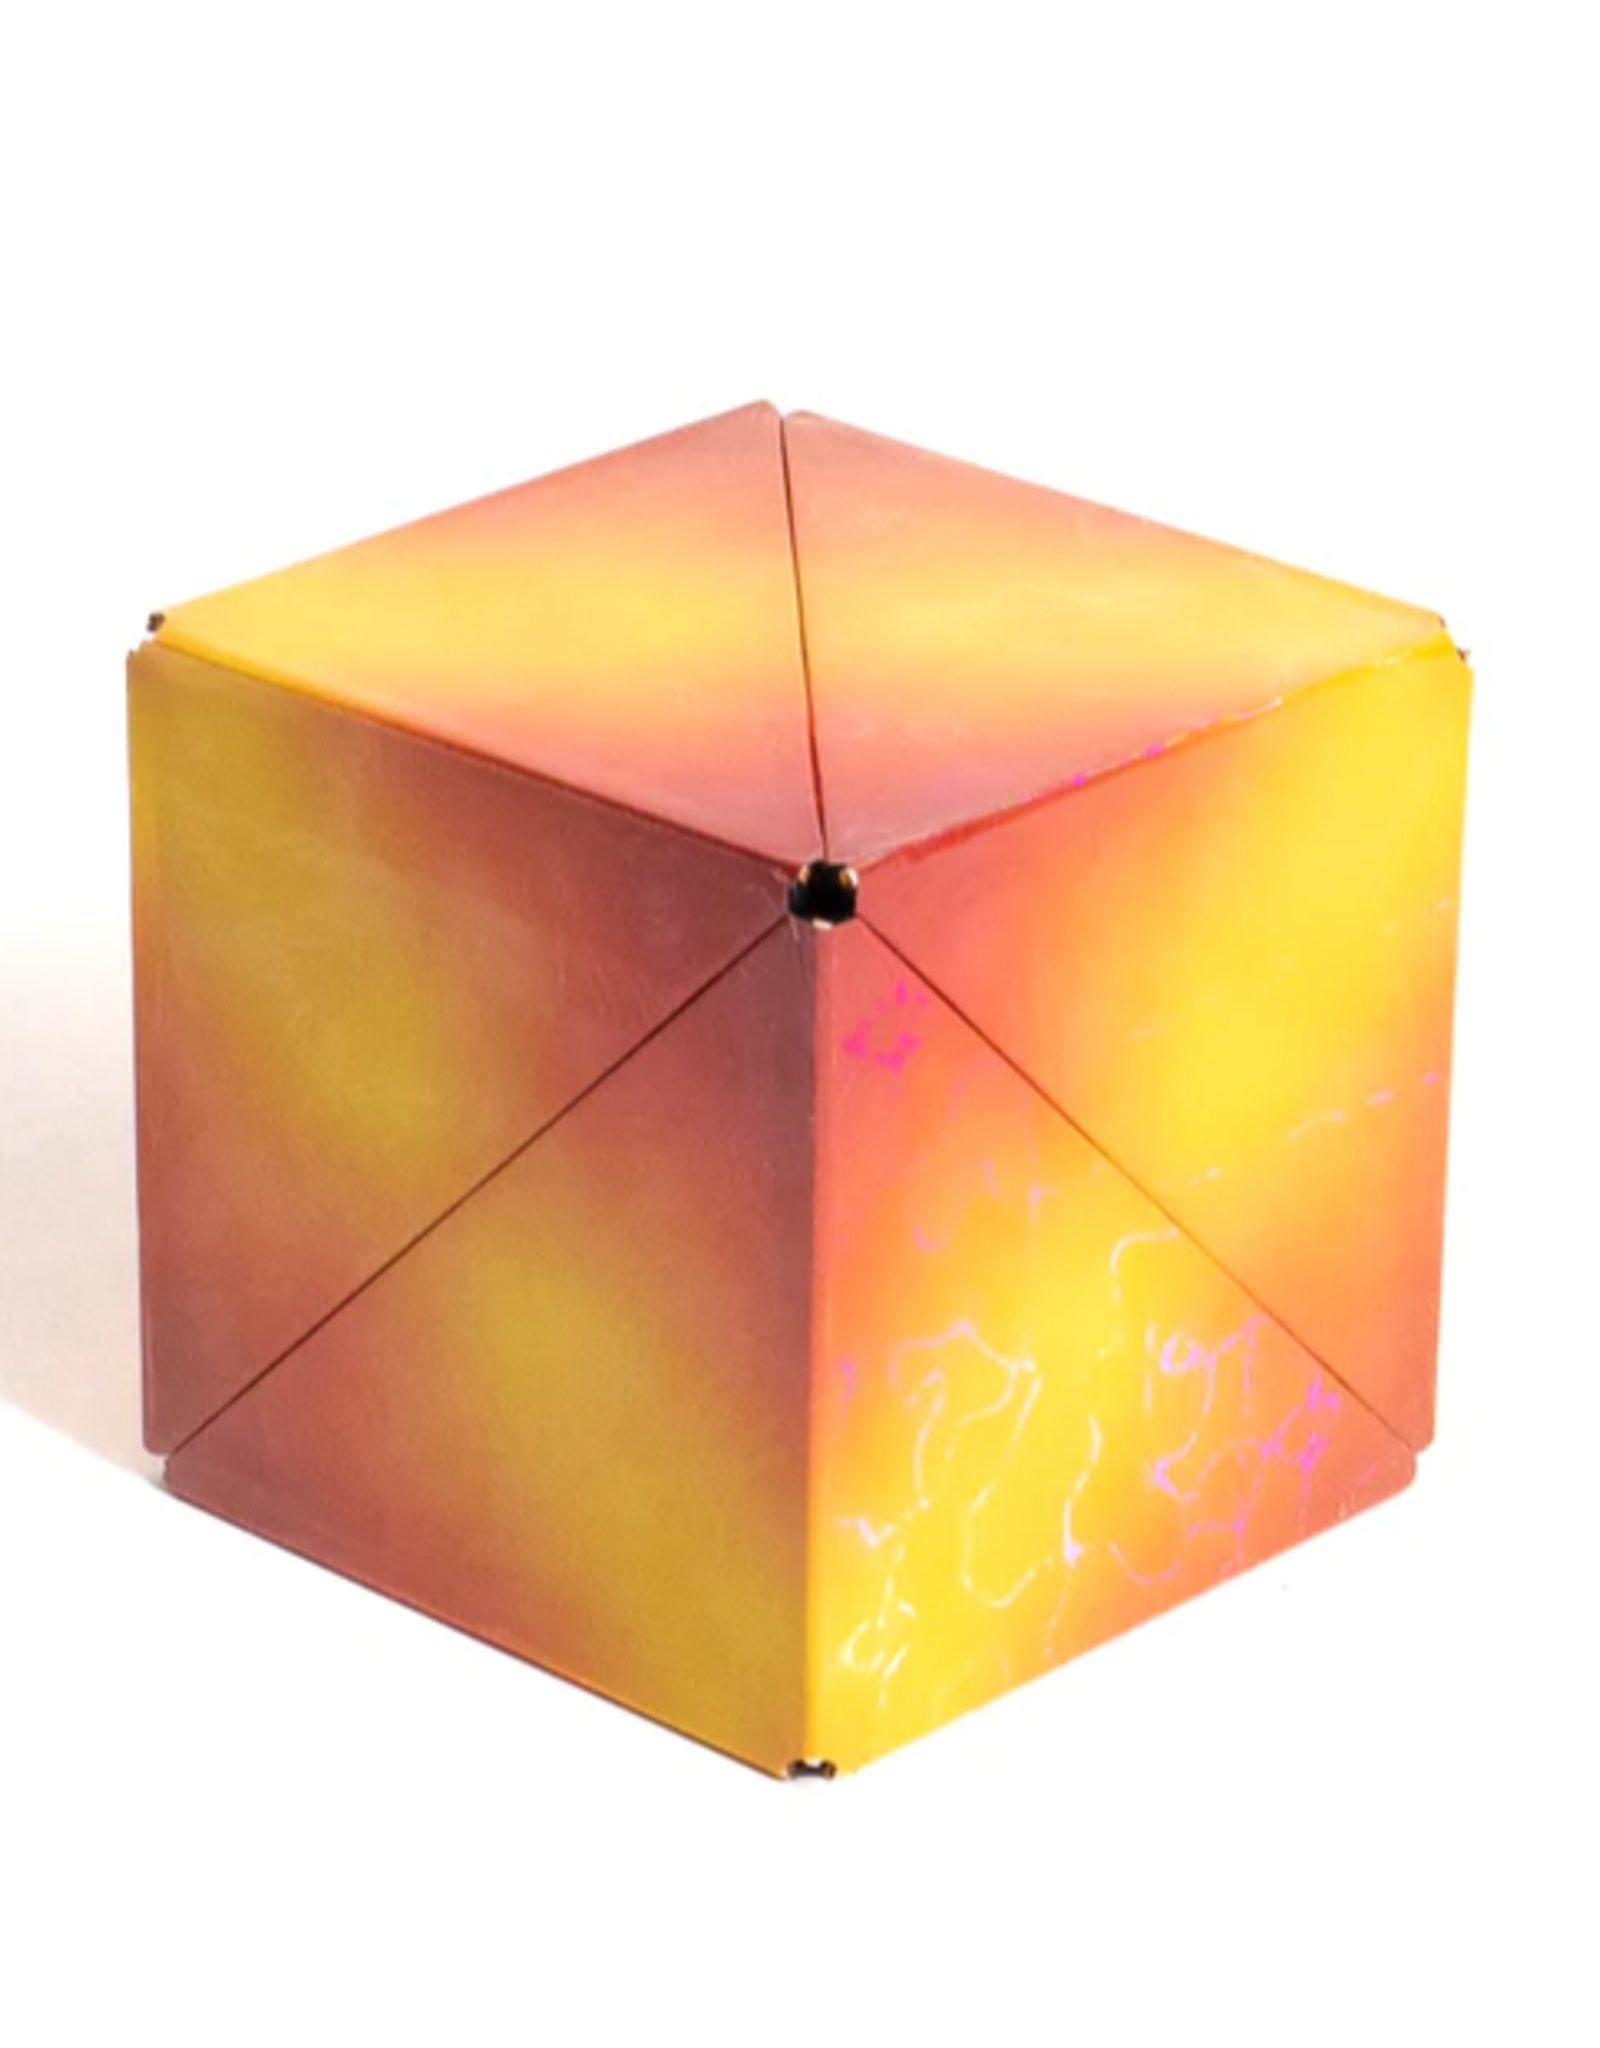 Shashibo Cube Holographic